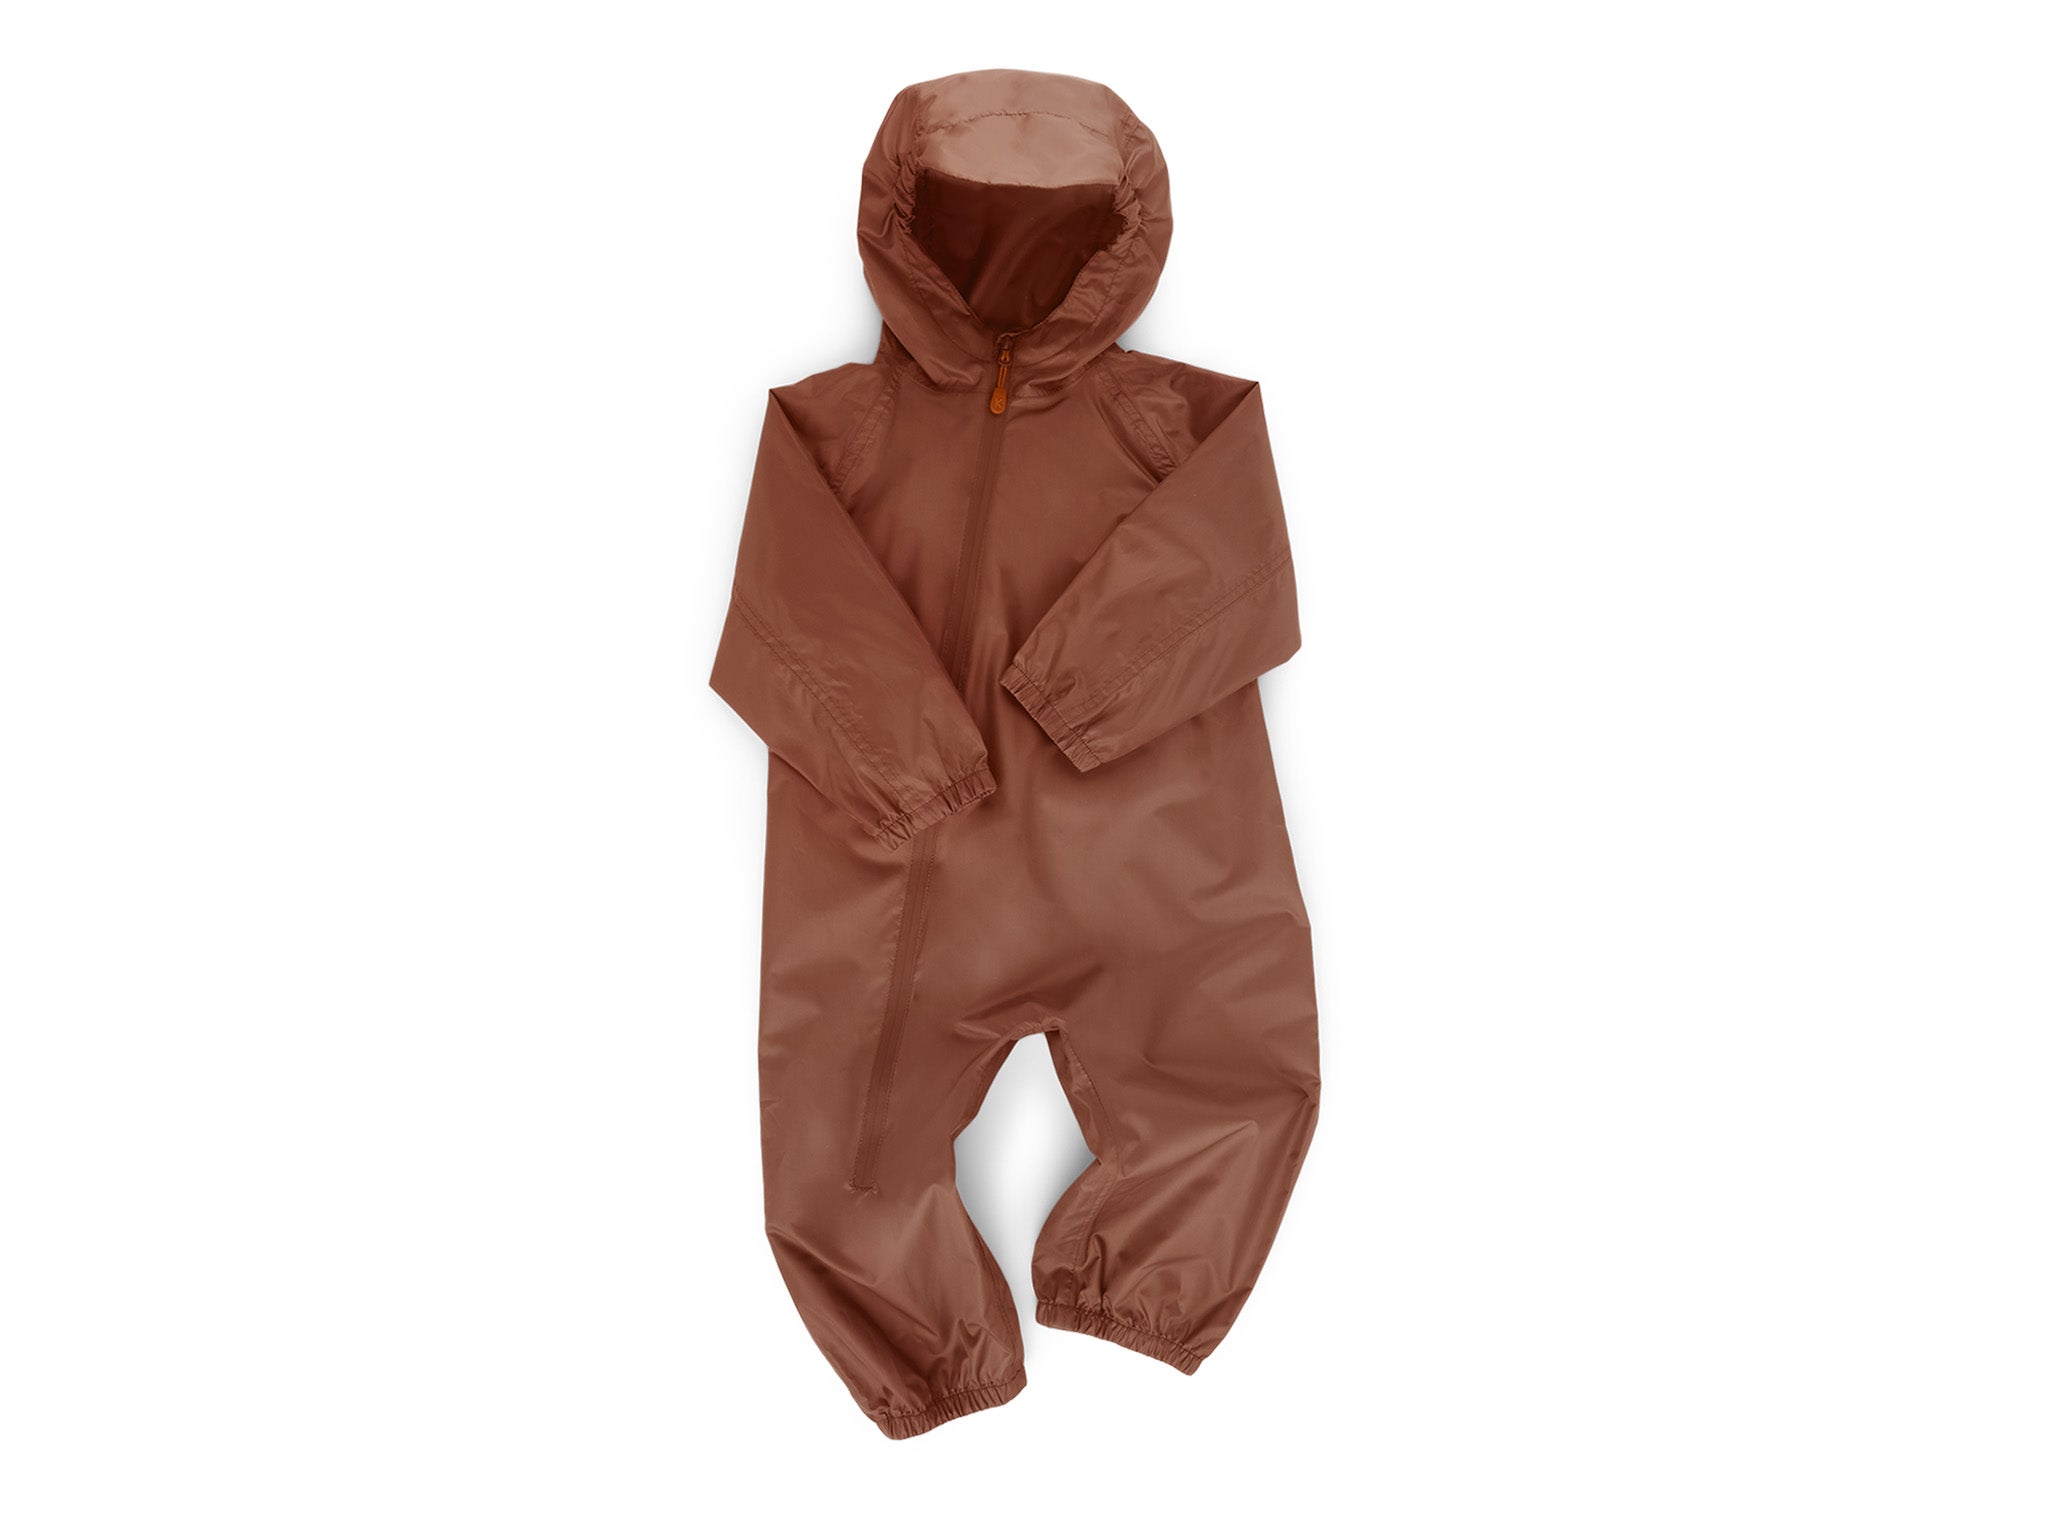 Kidly packaway rain suit